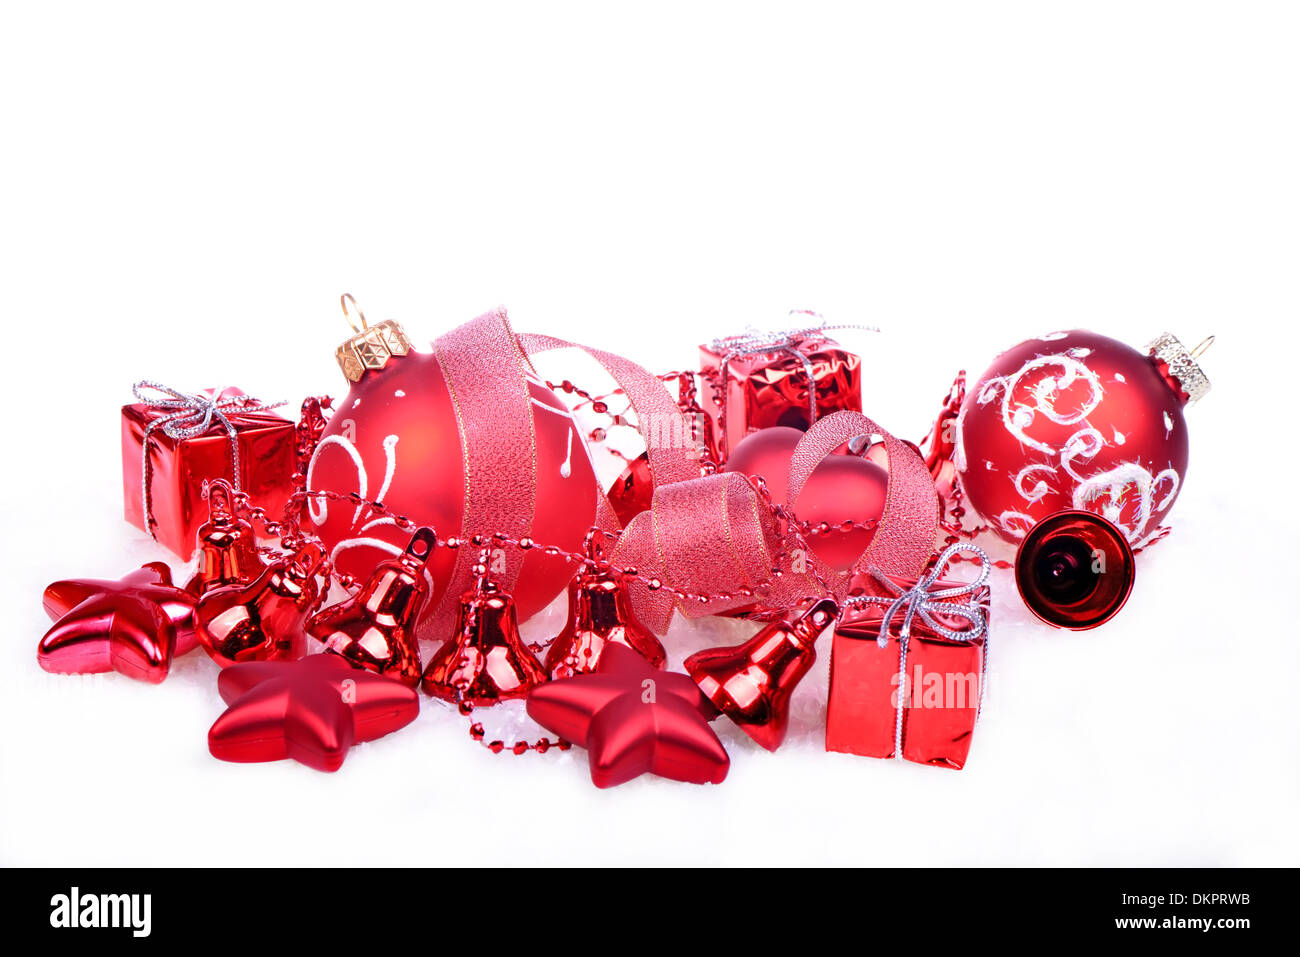 Fond de Noël avec des boules rouges, cloches et étoiles Banque D'Images